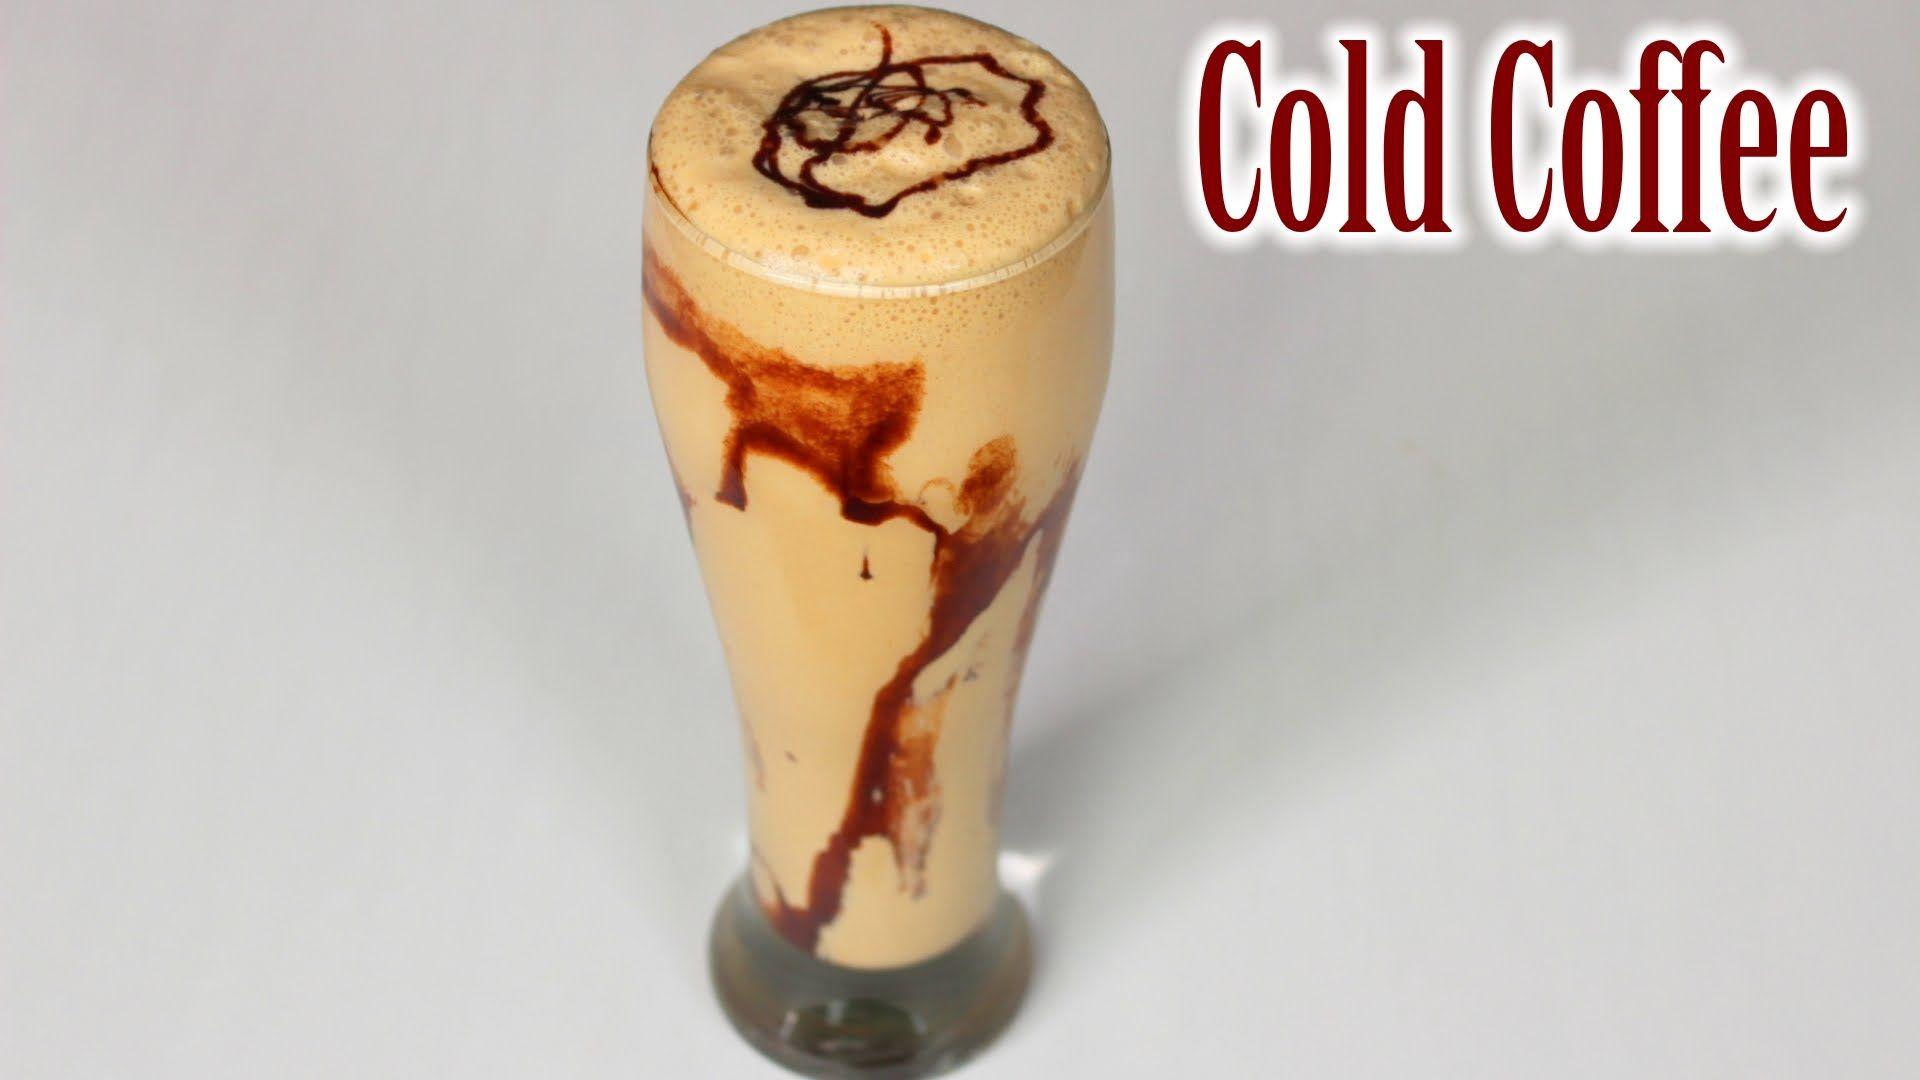 Café Style Cold Coffee Recipe. Chocolate Milkshake Recipe. How to